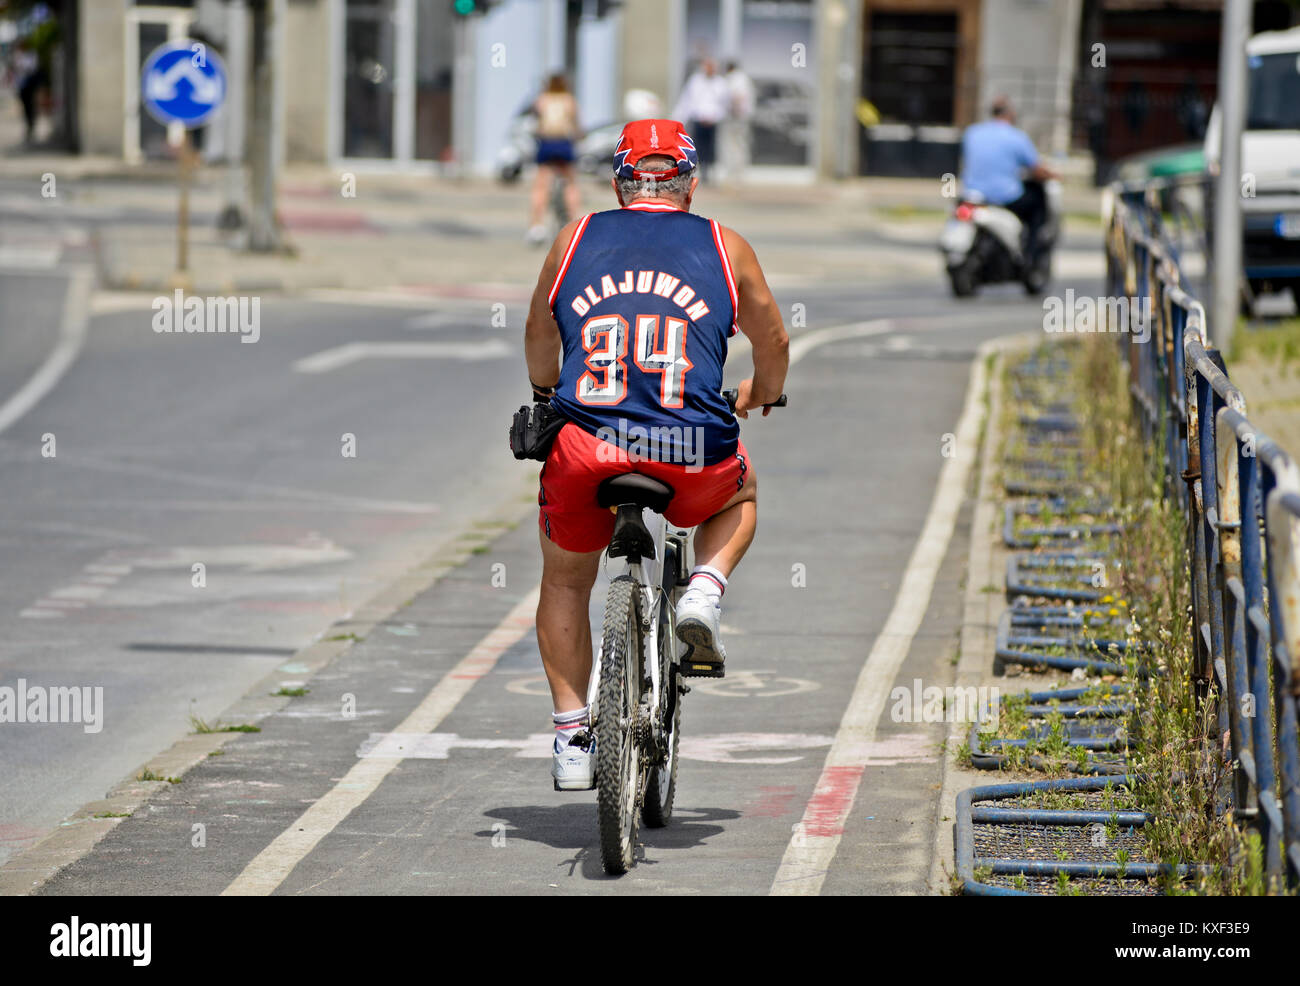 Ein Mann mit dem Fahrrad das Tragen eines Basketball Jersey (hakeem Olajuwon, Houston Rockets). Skopje, Mazedonien Stockfoto